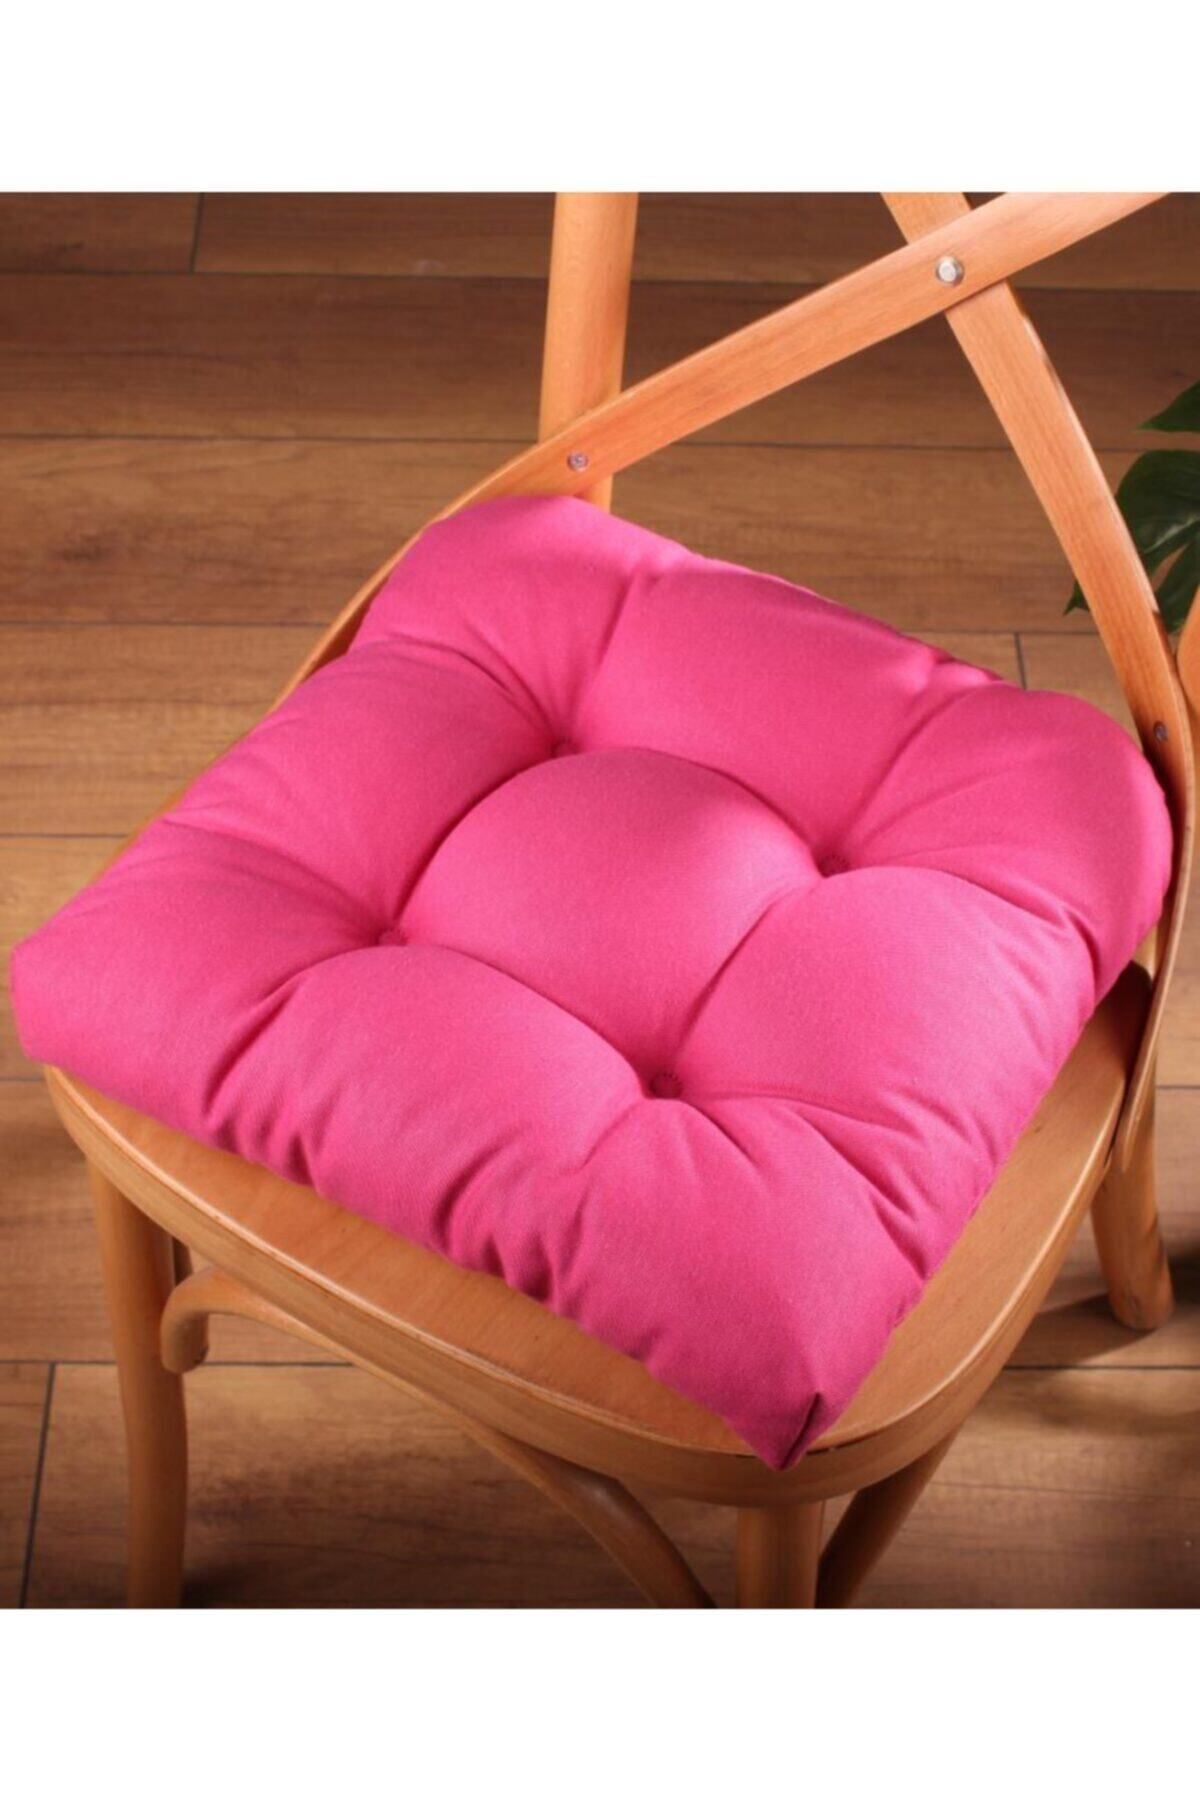 ALTINPAMUK Gold Pofidik Fuşya Sandalye Minderi Özel Dikişli Bağcıklı 40x40cm